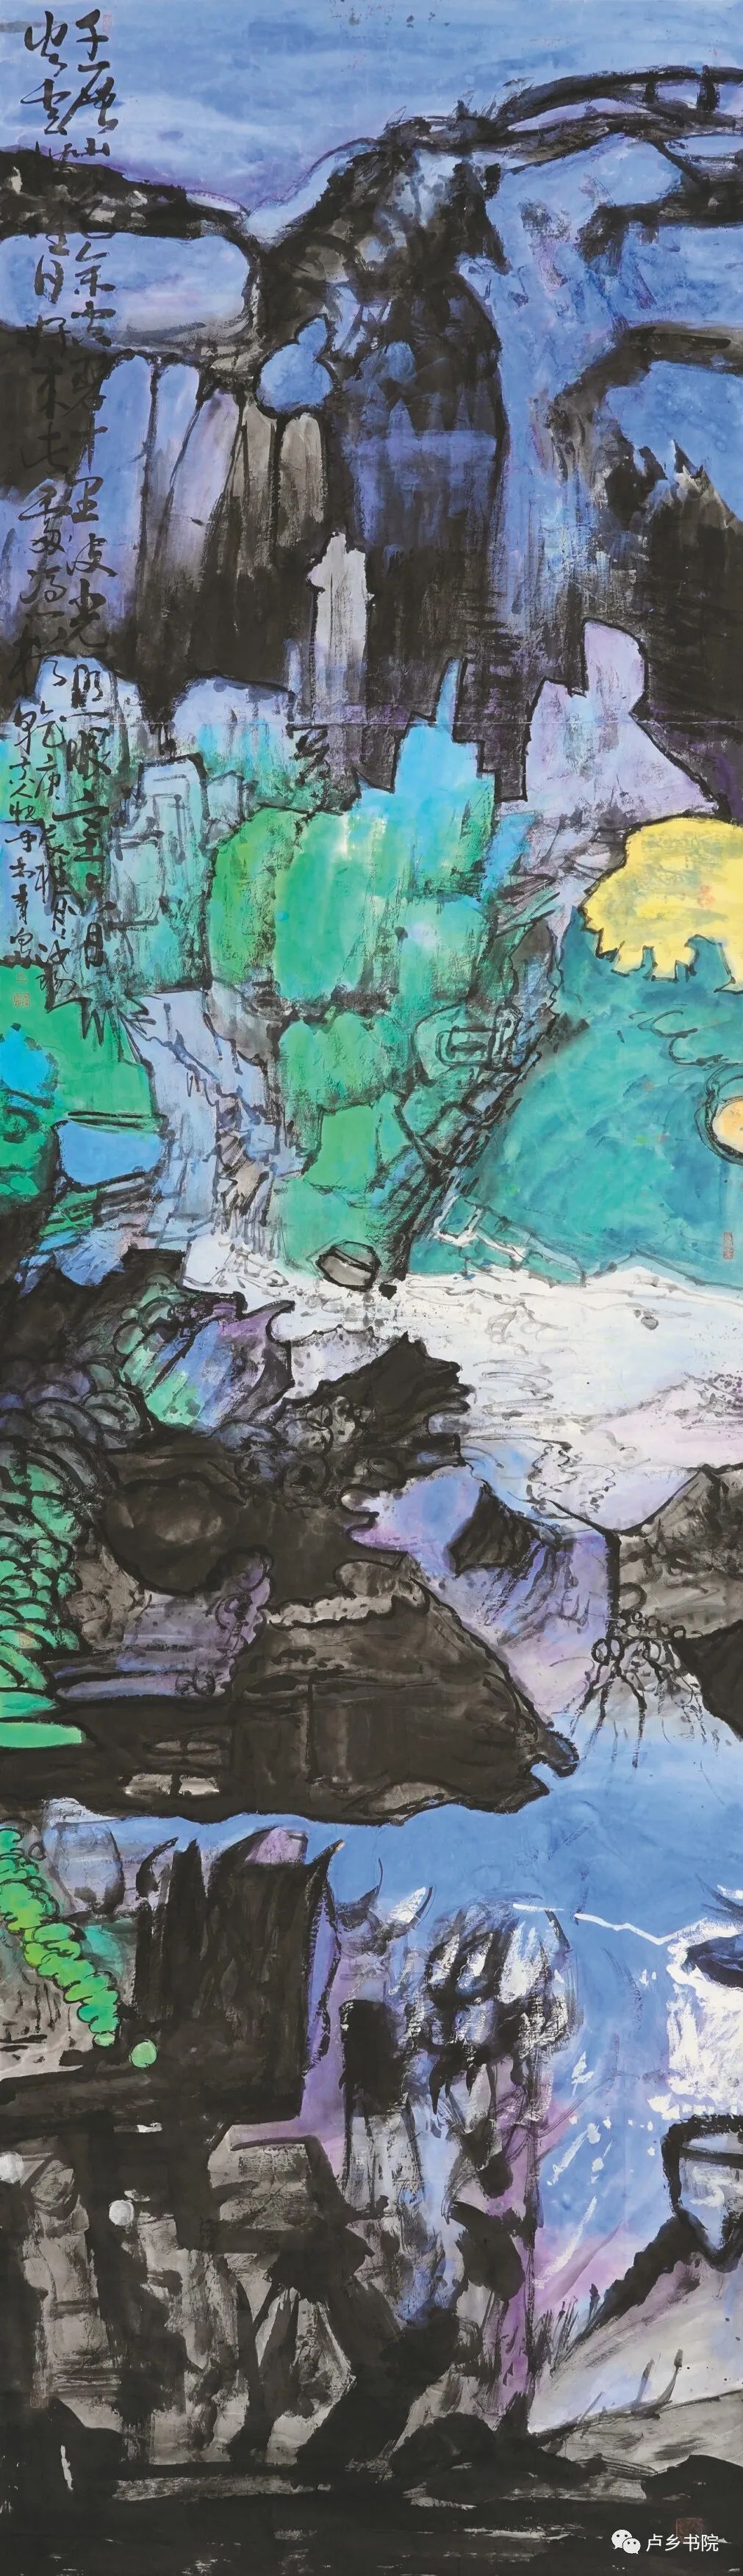 孙博文的彩墨山水画——惊醒笔墨的梦境，唤醒丘壑的异象